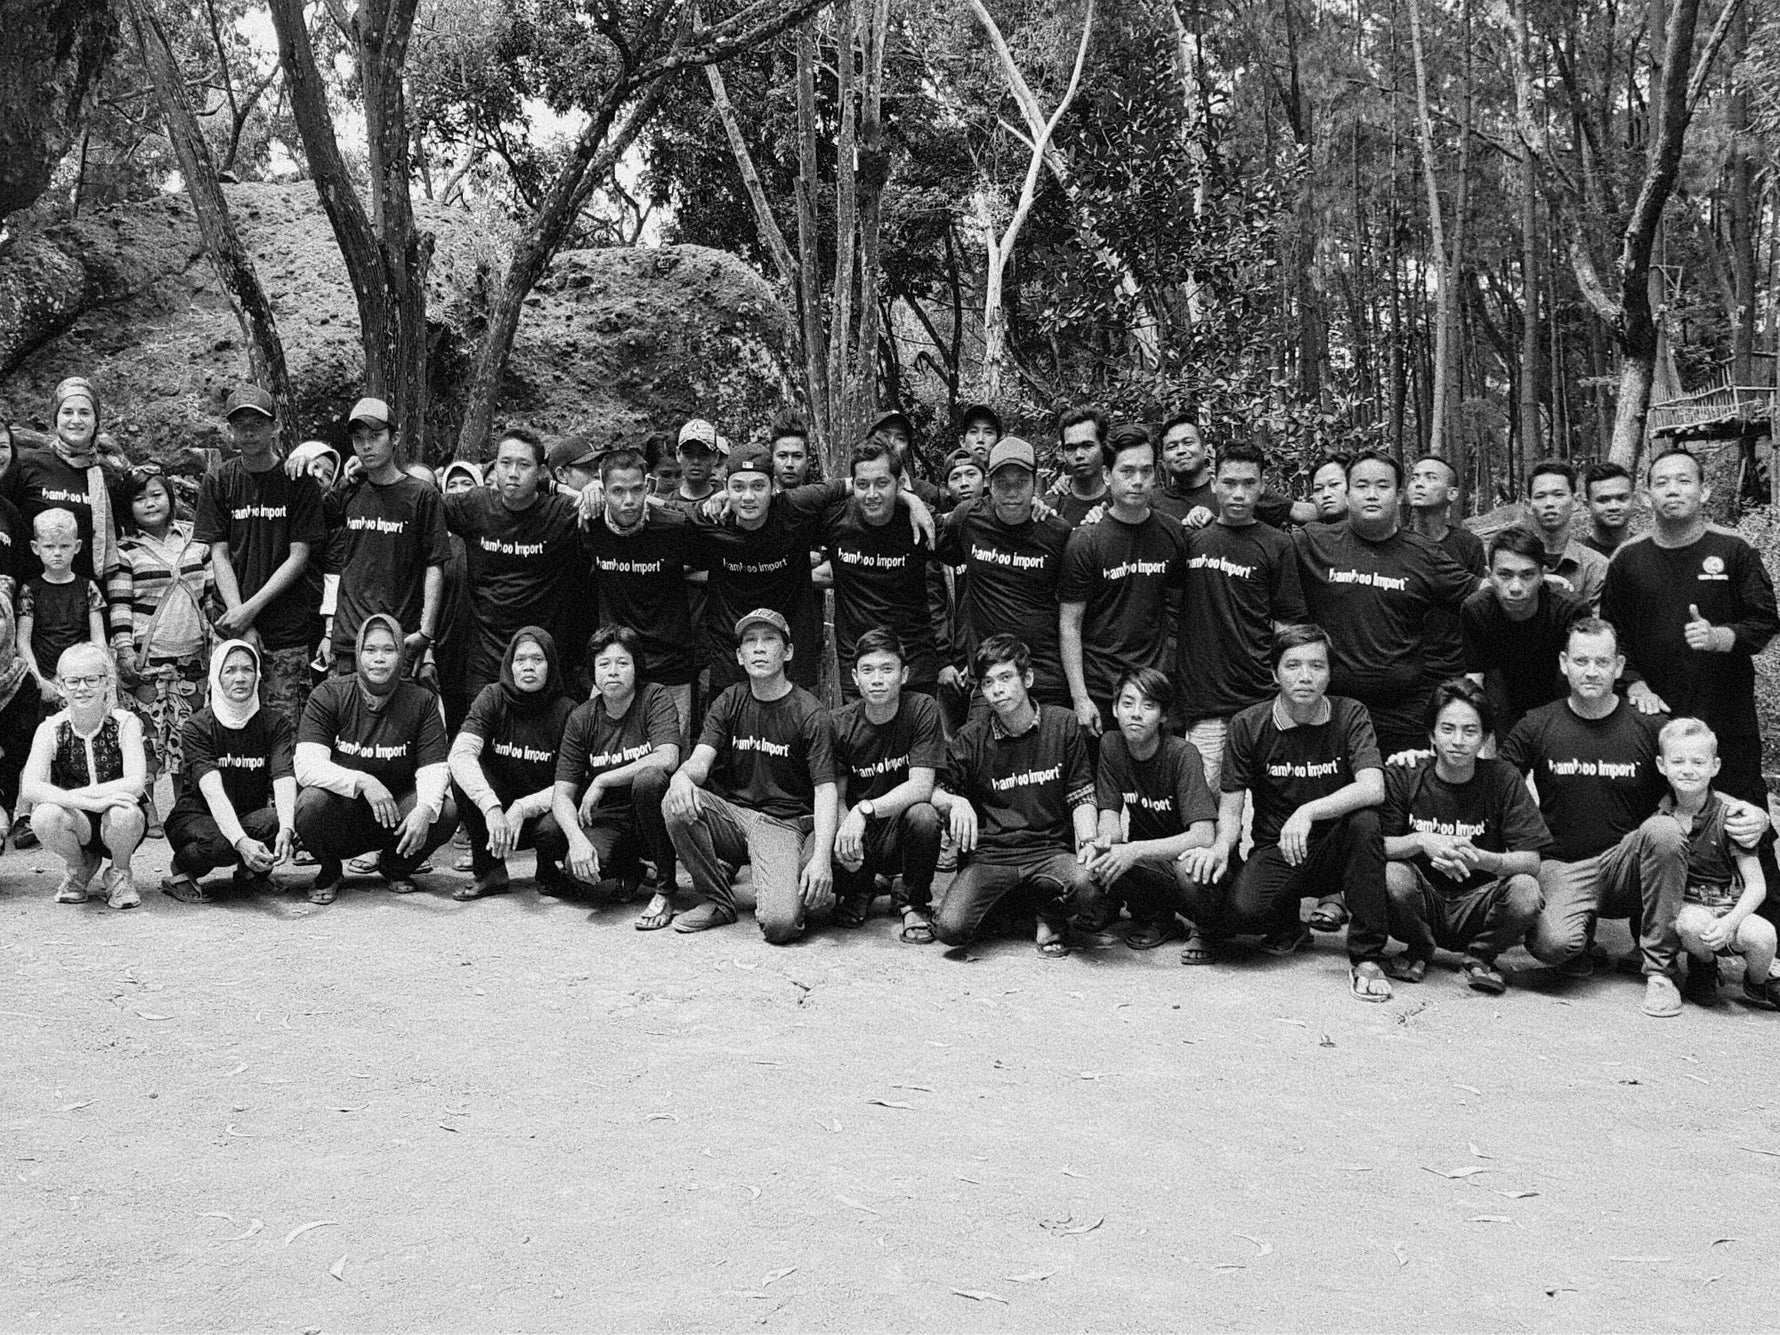 Groepsfoto van een Bamboe team in Indonesie